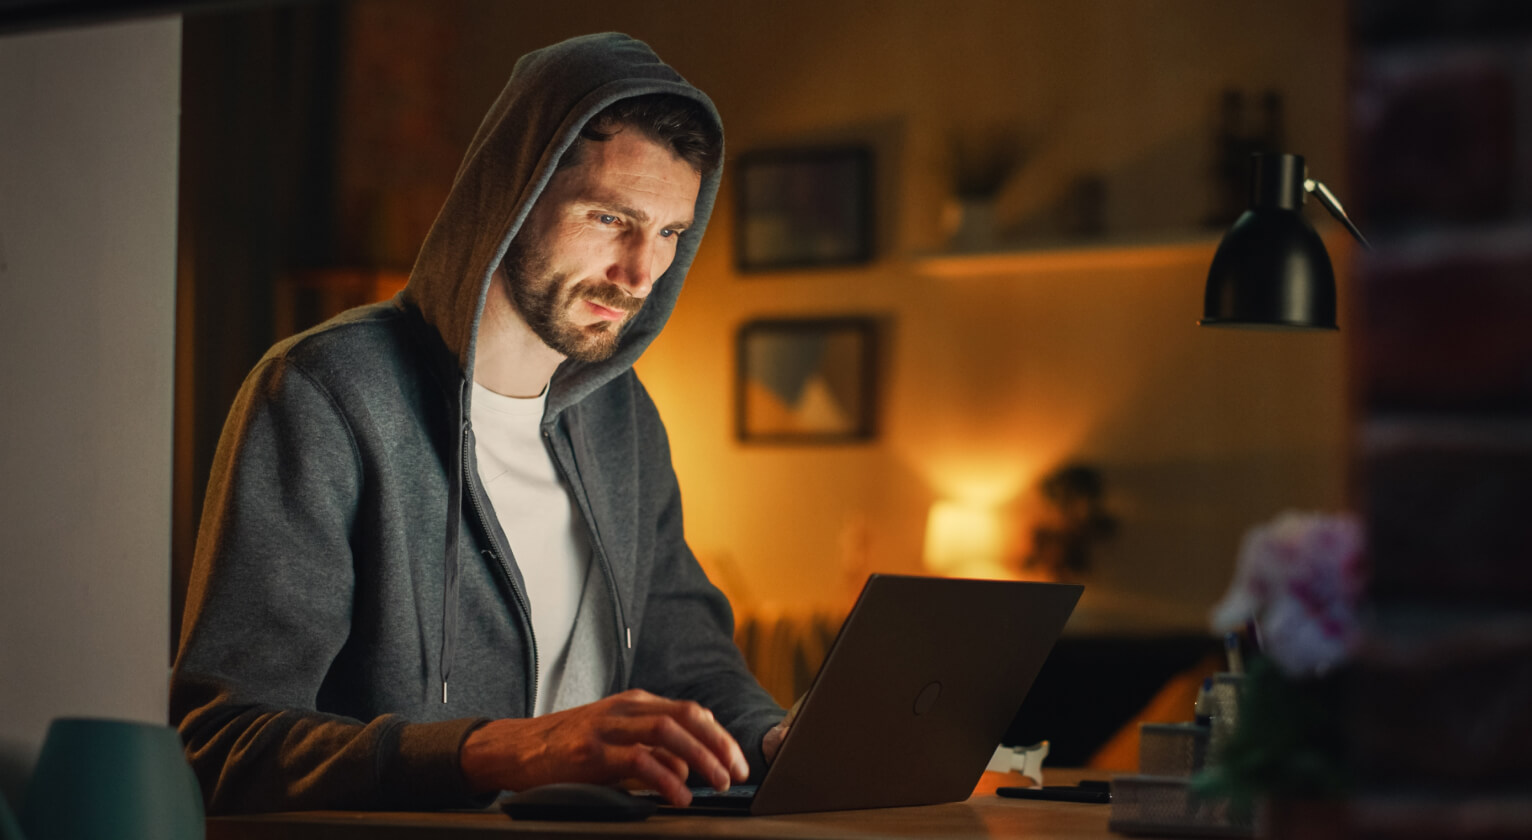 Bild eines jungen Mannes, der Forex auf einer Online-Trading-Plattform handelt, in einer entspannten Umgebung.
